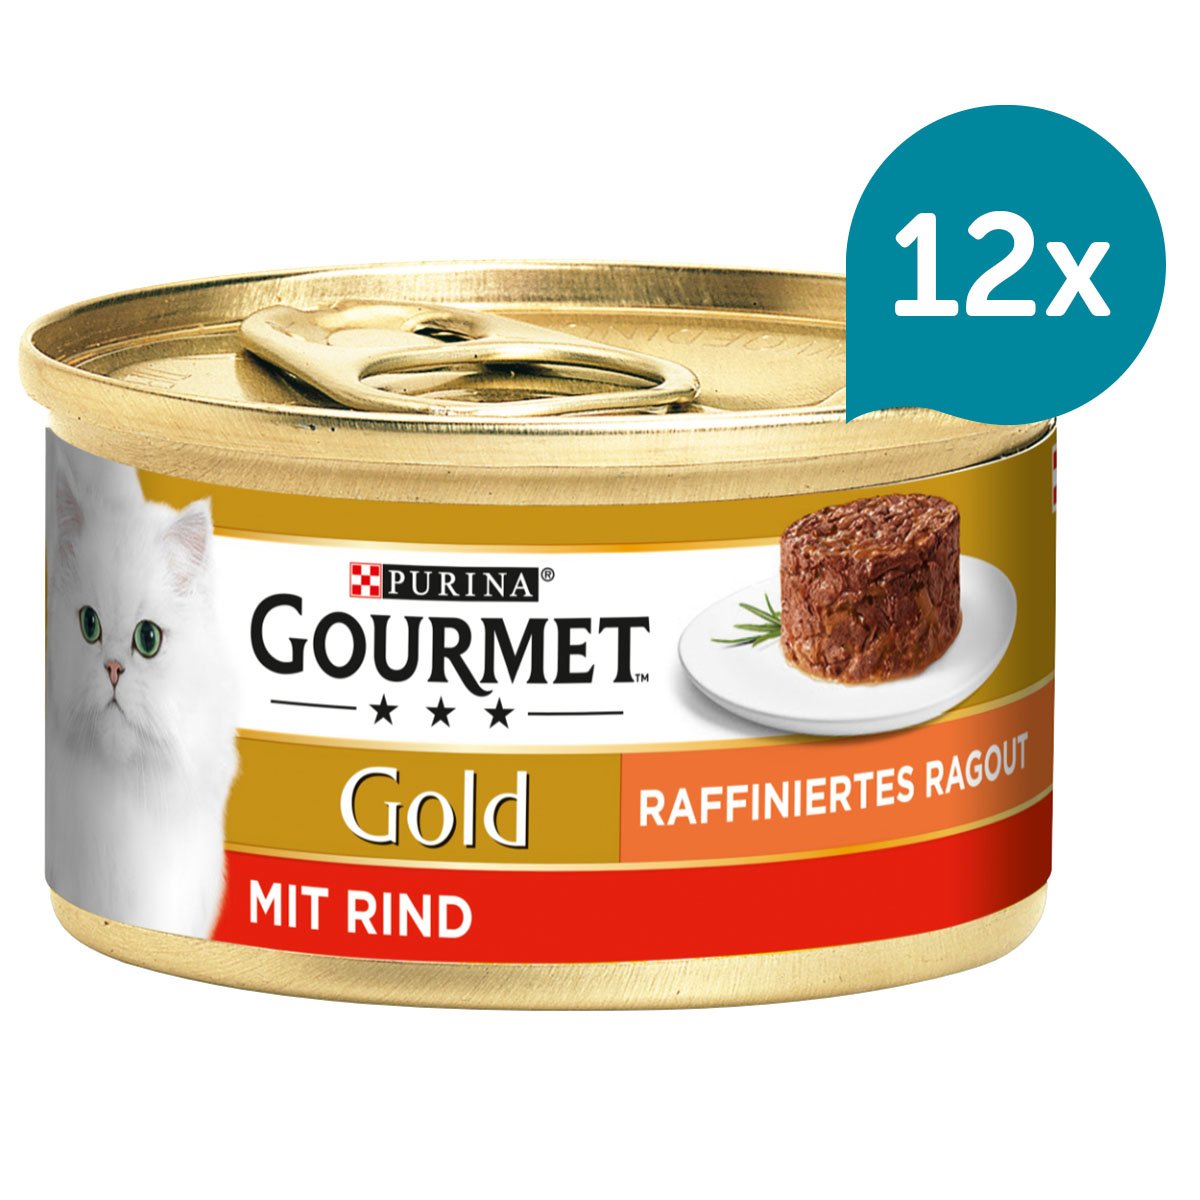 GOURMET Gold Raffiniertes Ragout mit Rind 12x85g